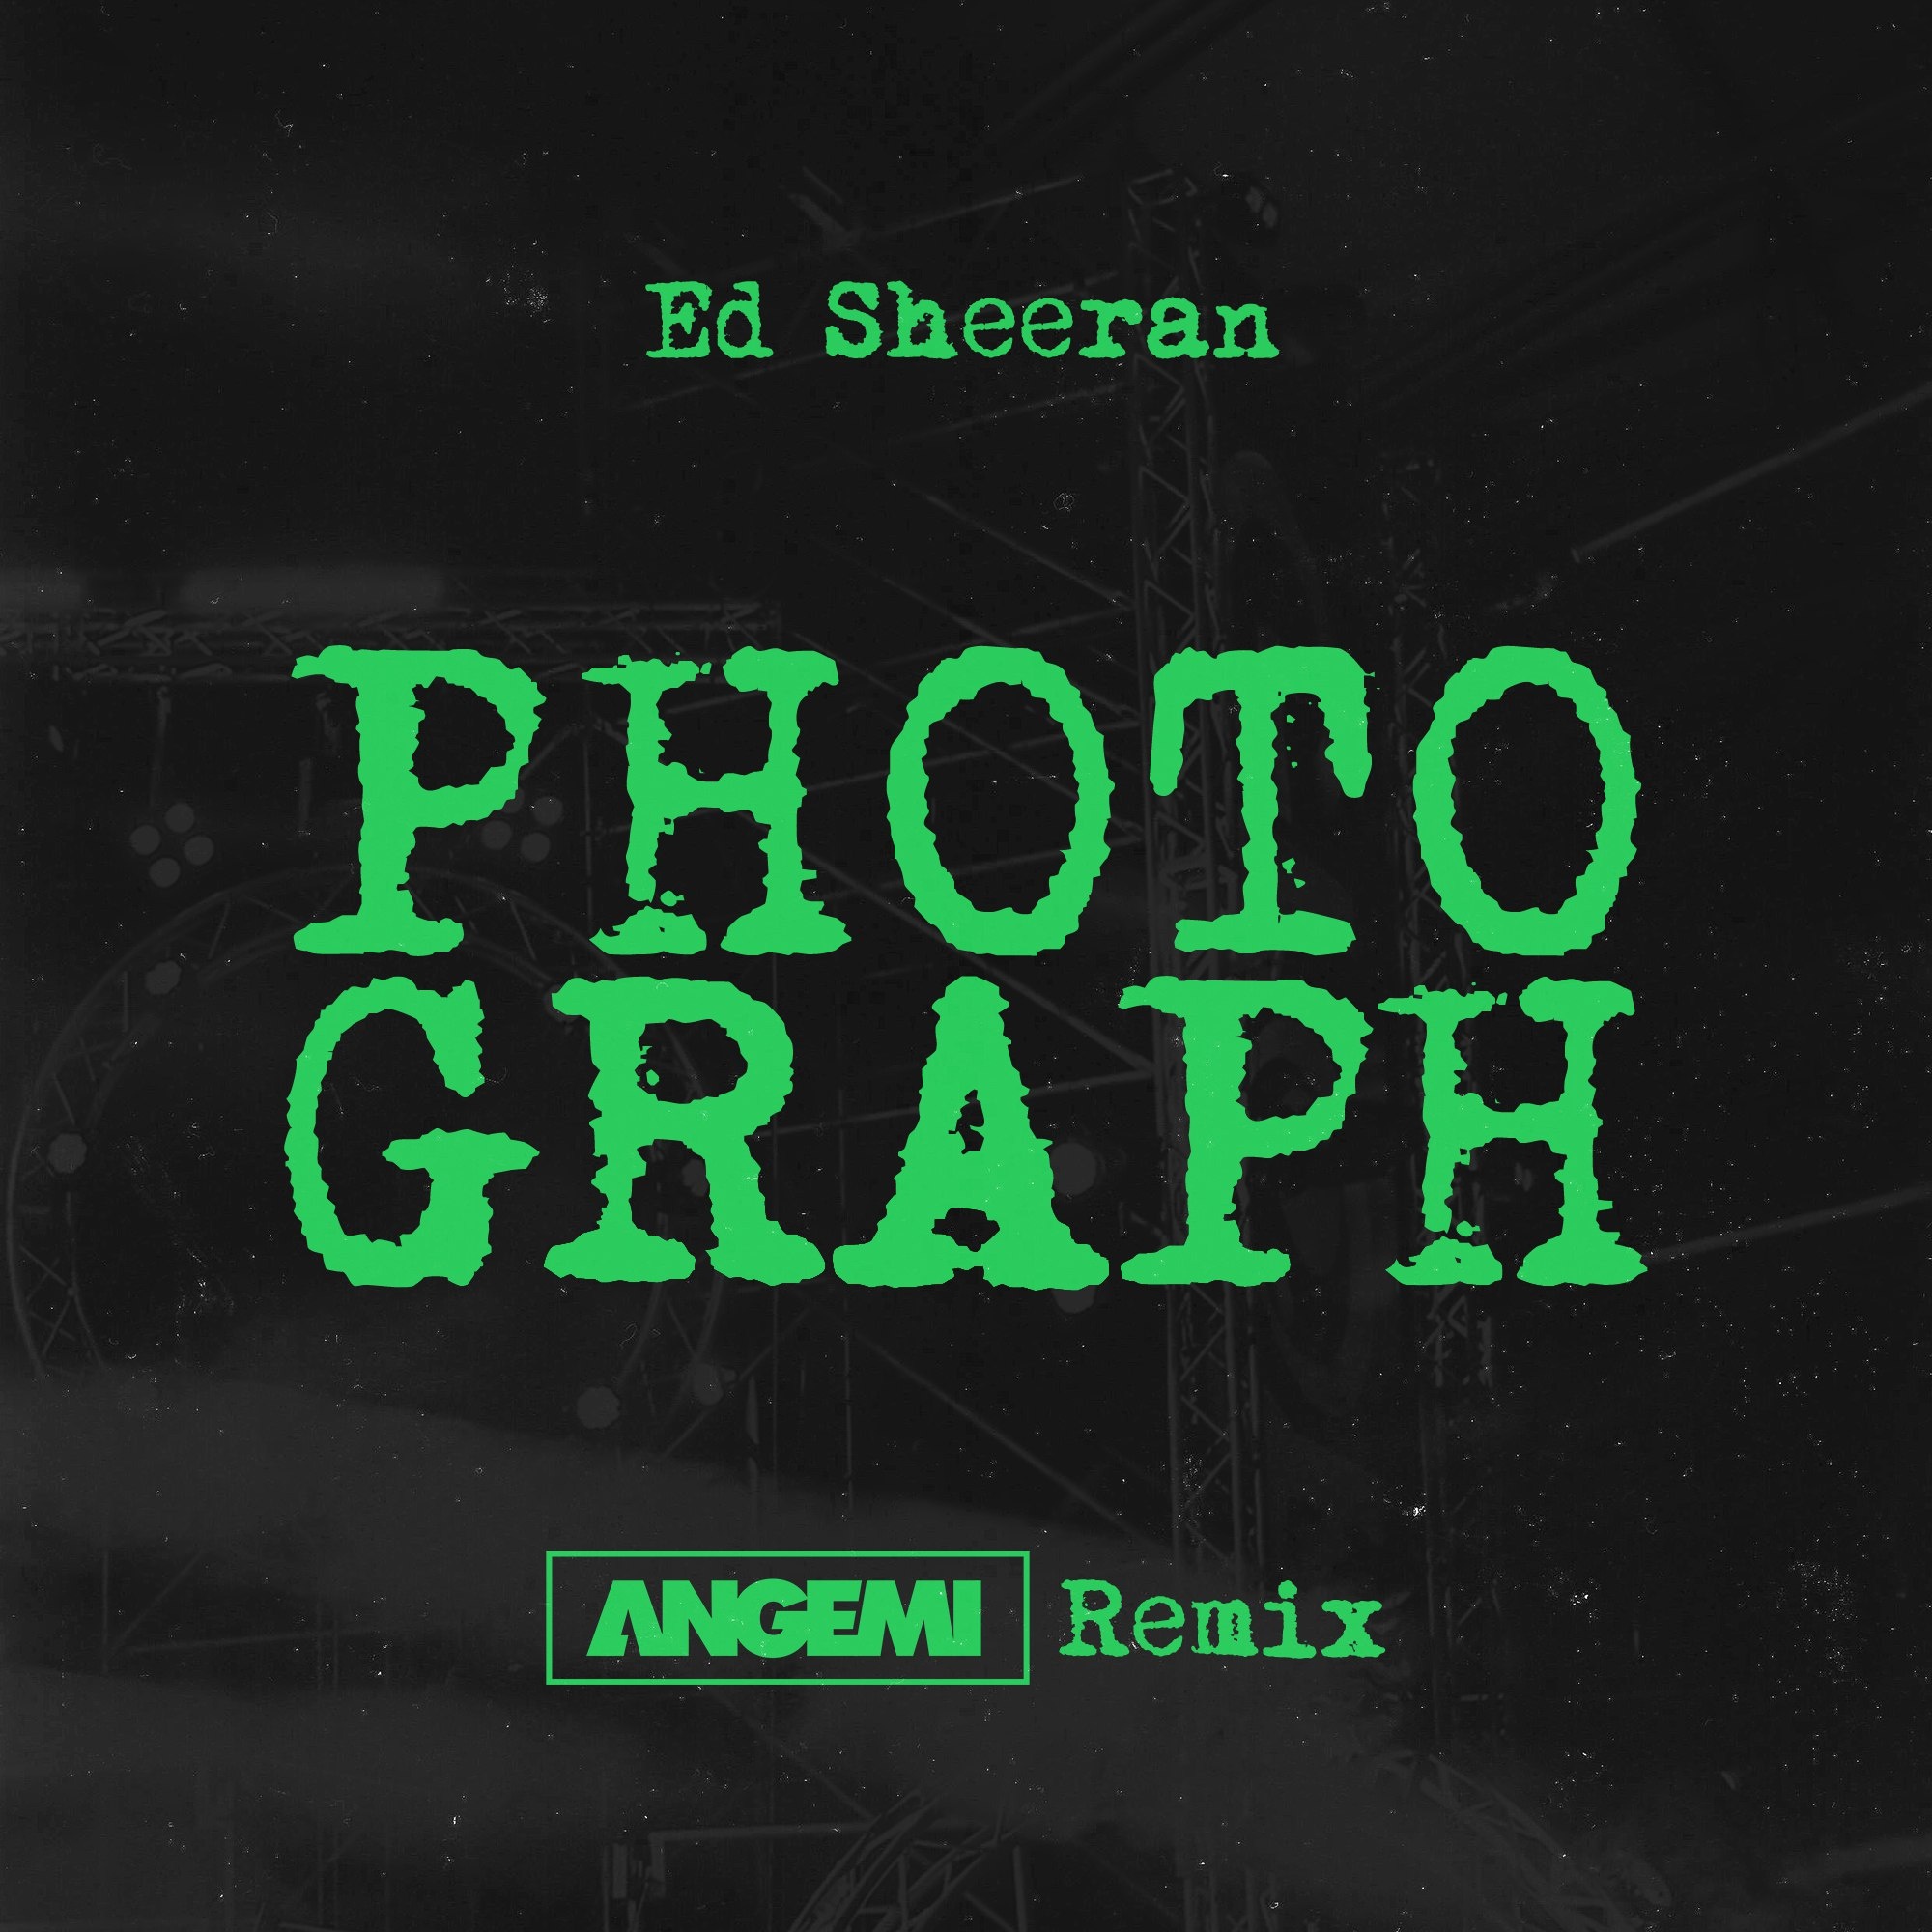 Photograph (ANGEMI Remix)